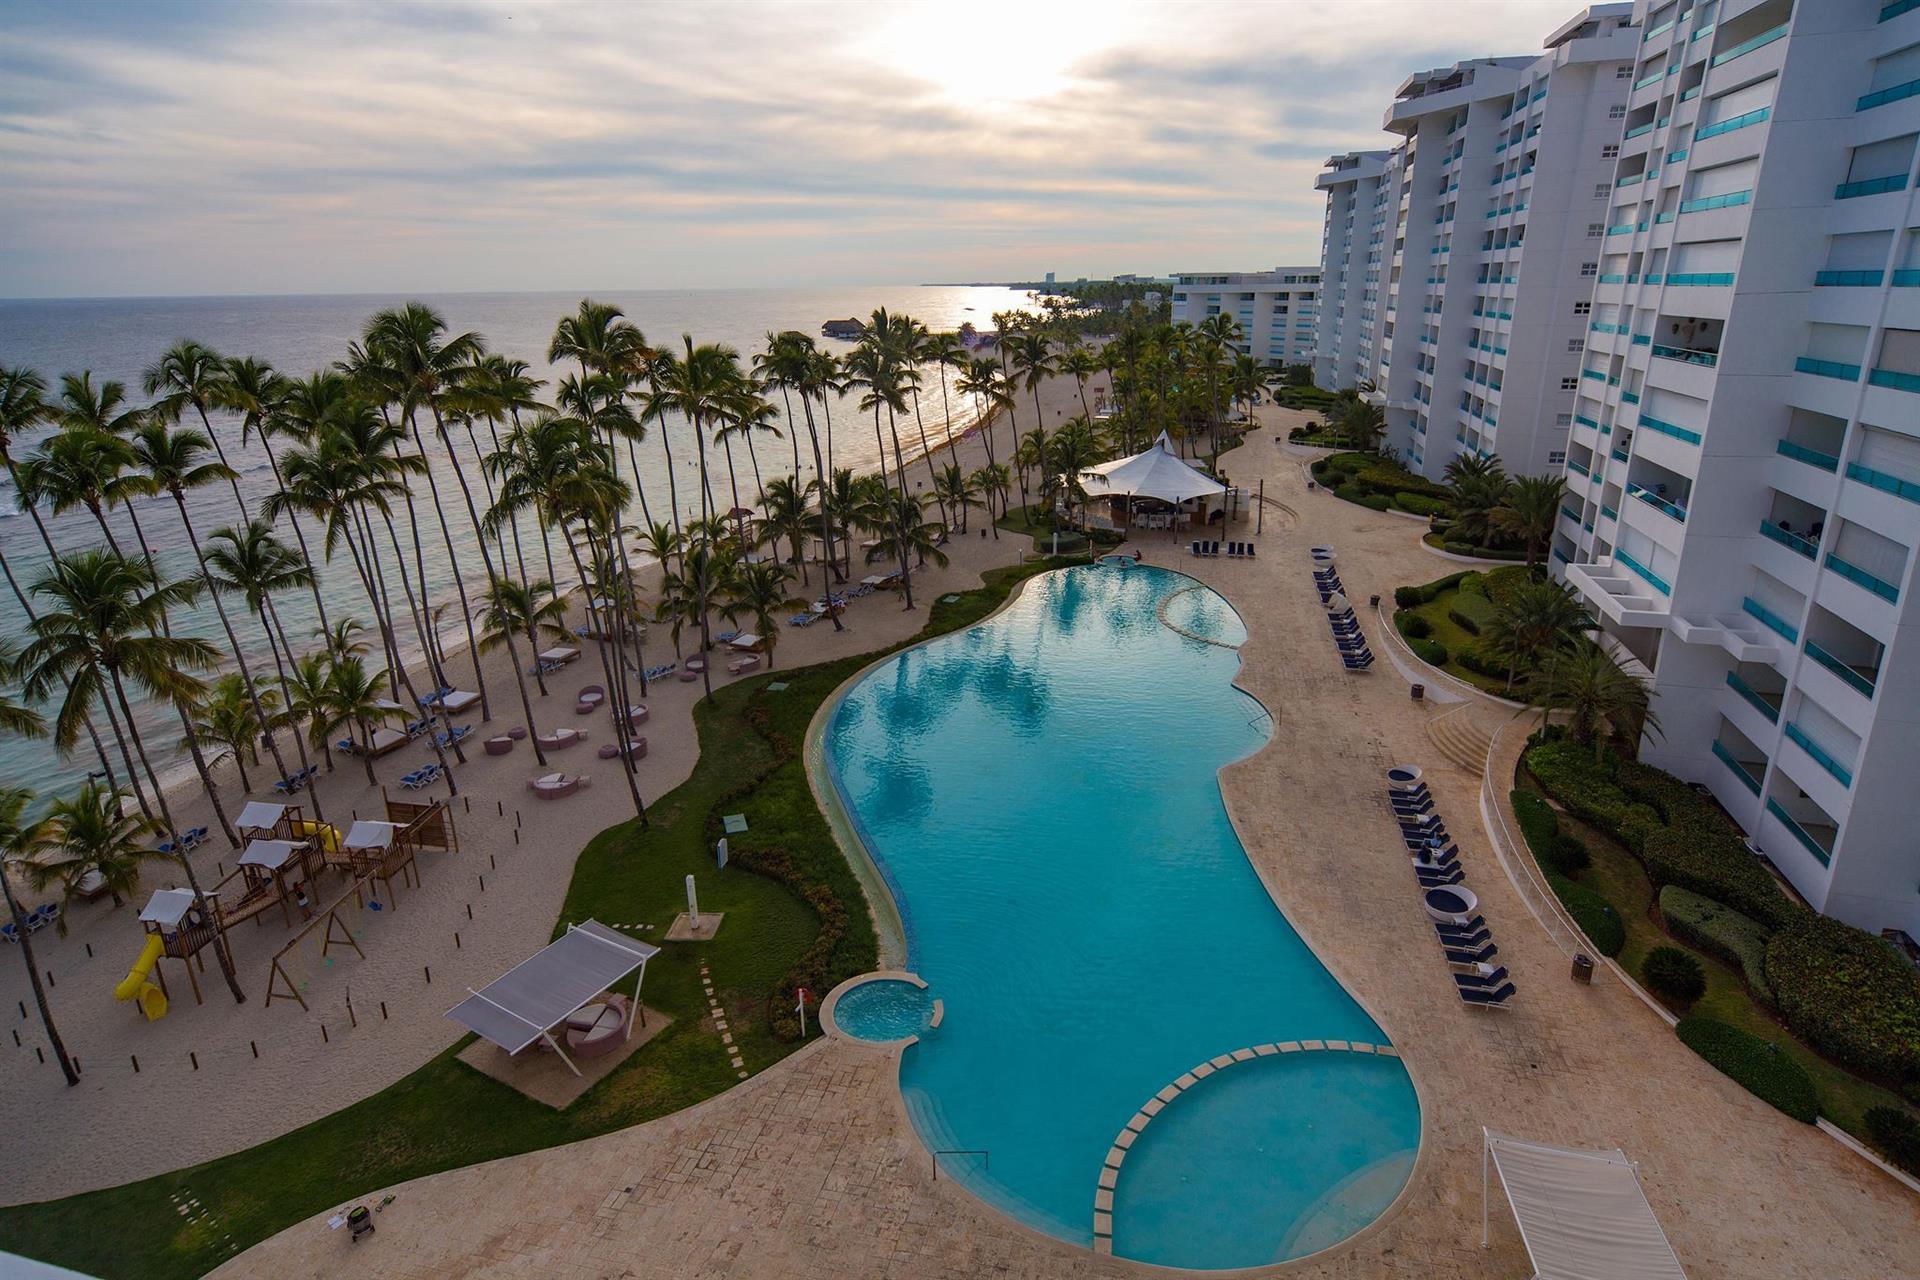 Costa caribe beach hotel венесуэла. Gran Caribe Neptuno Triton Гавана. Costa Caribe Beach Hotel Resort 4 Венесуэла. Gran Caribe Neptuno & Triton 3*.